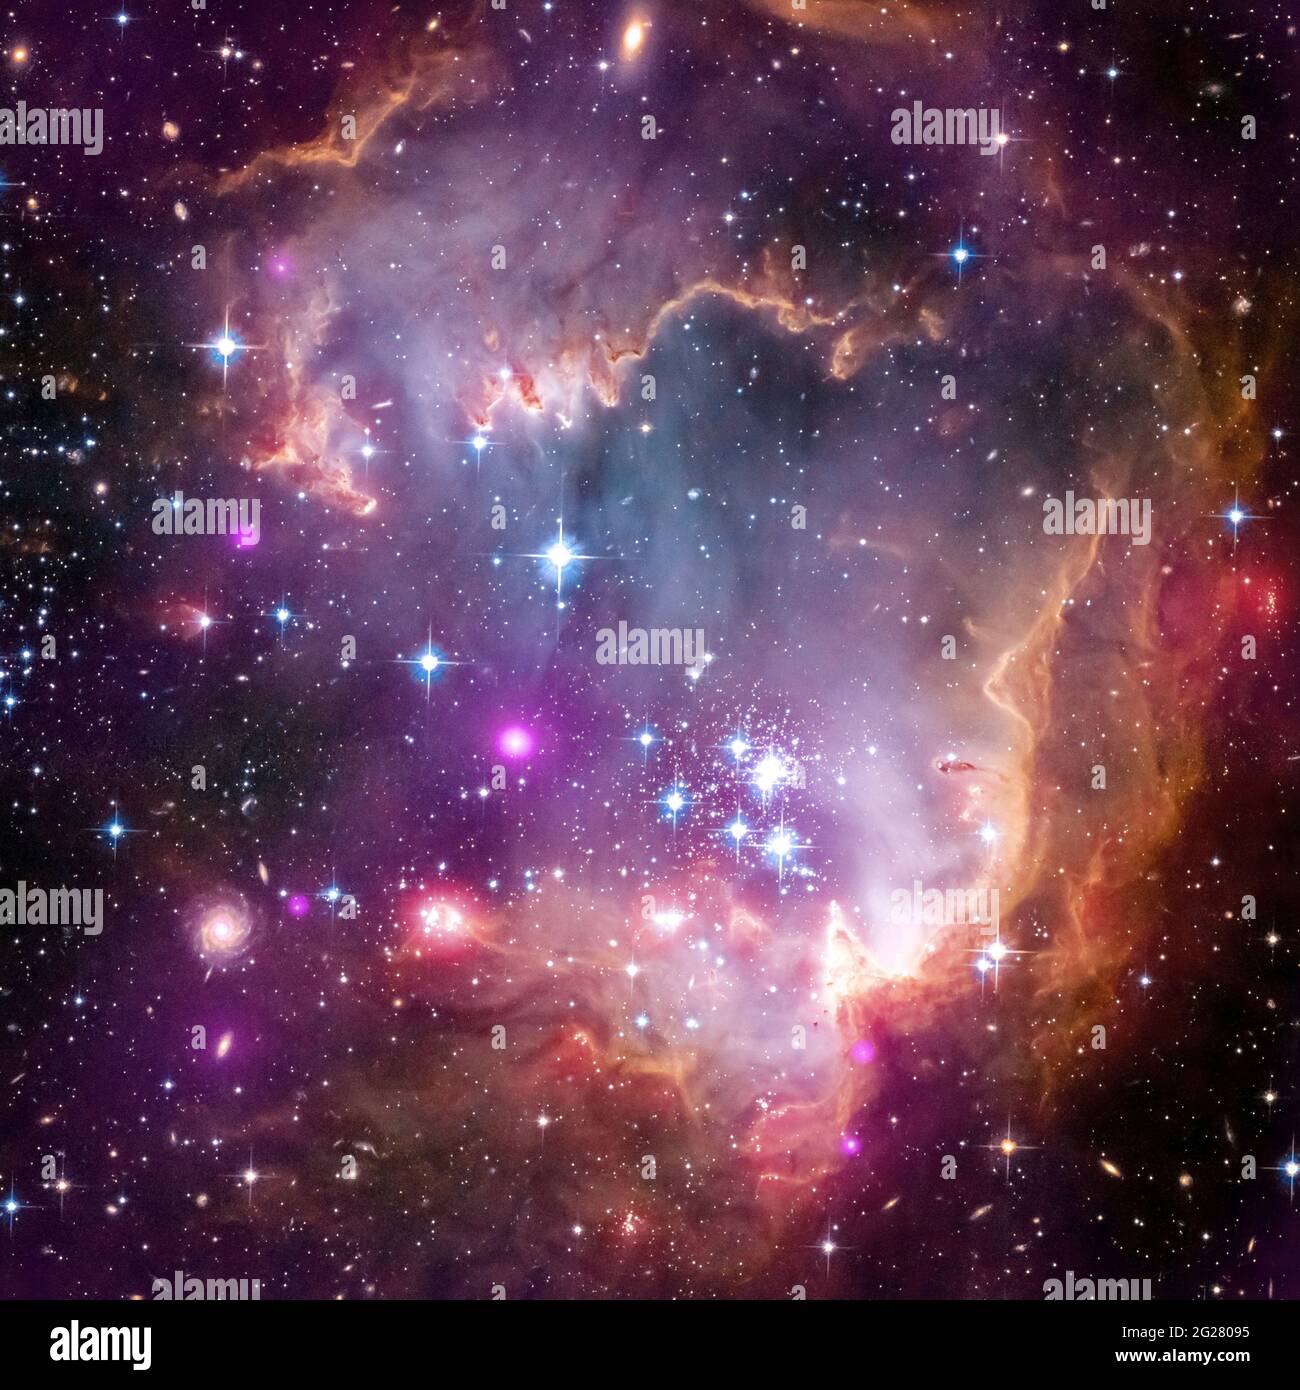 Le giovani stelle della Small Magellanic Cloud (SMC), una delle galassie più vicine alla nostra Via Lattea. Foto Stock